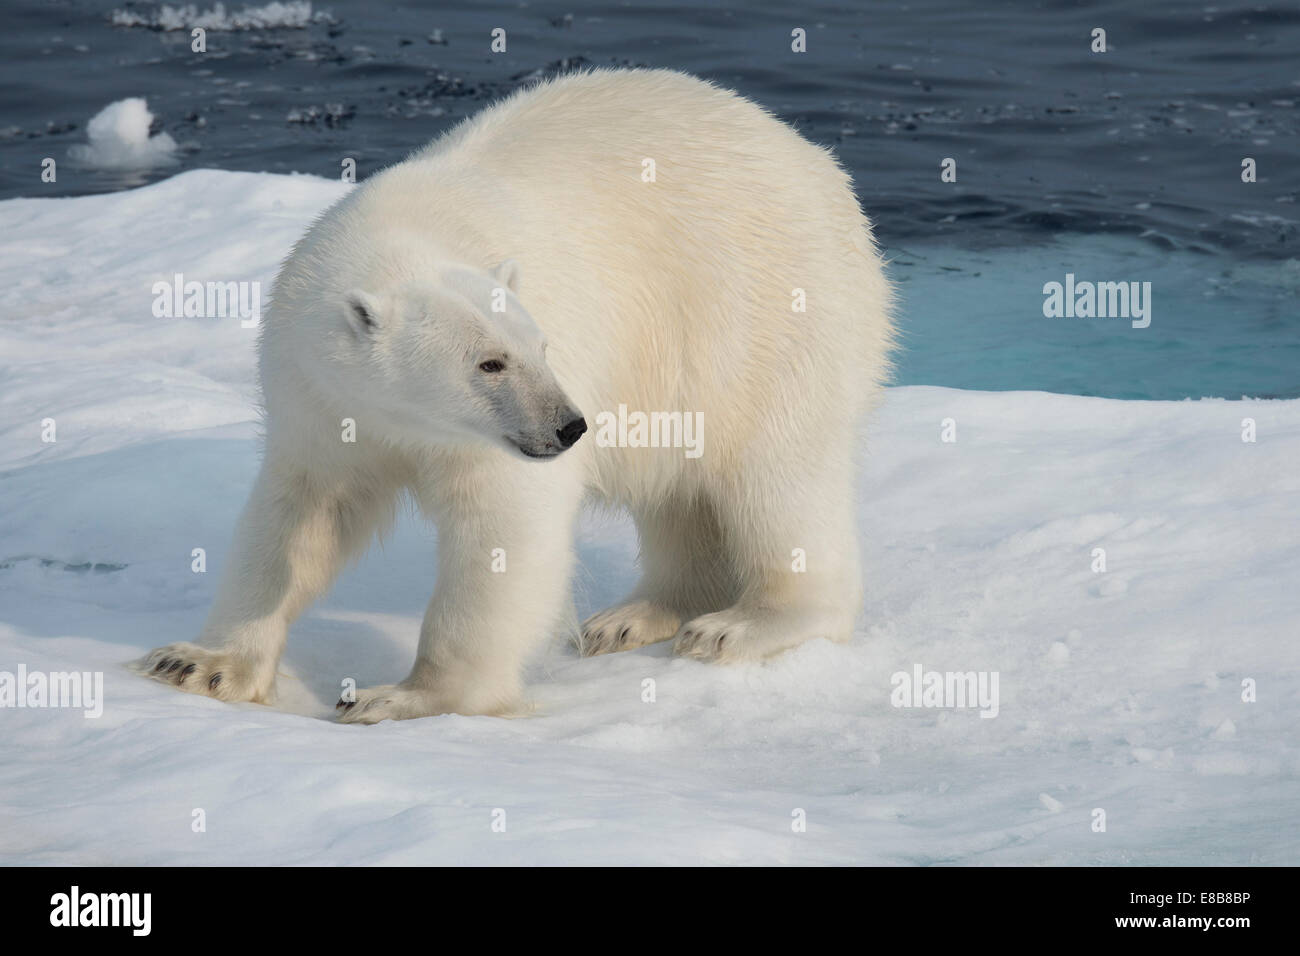 Homme Ours blanc, Ursus maritimus, sur un iceberg, l'île de Baffin, de l'Arctique canadien. Banque D'Images